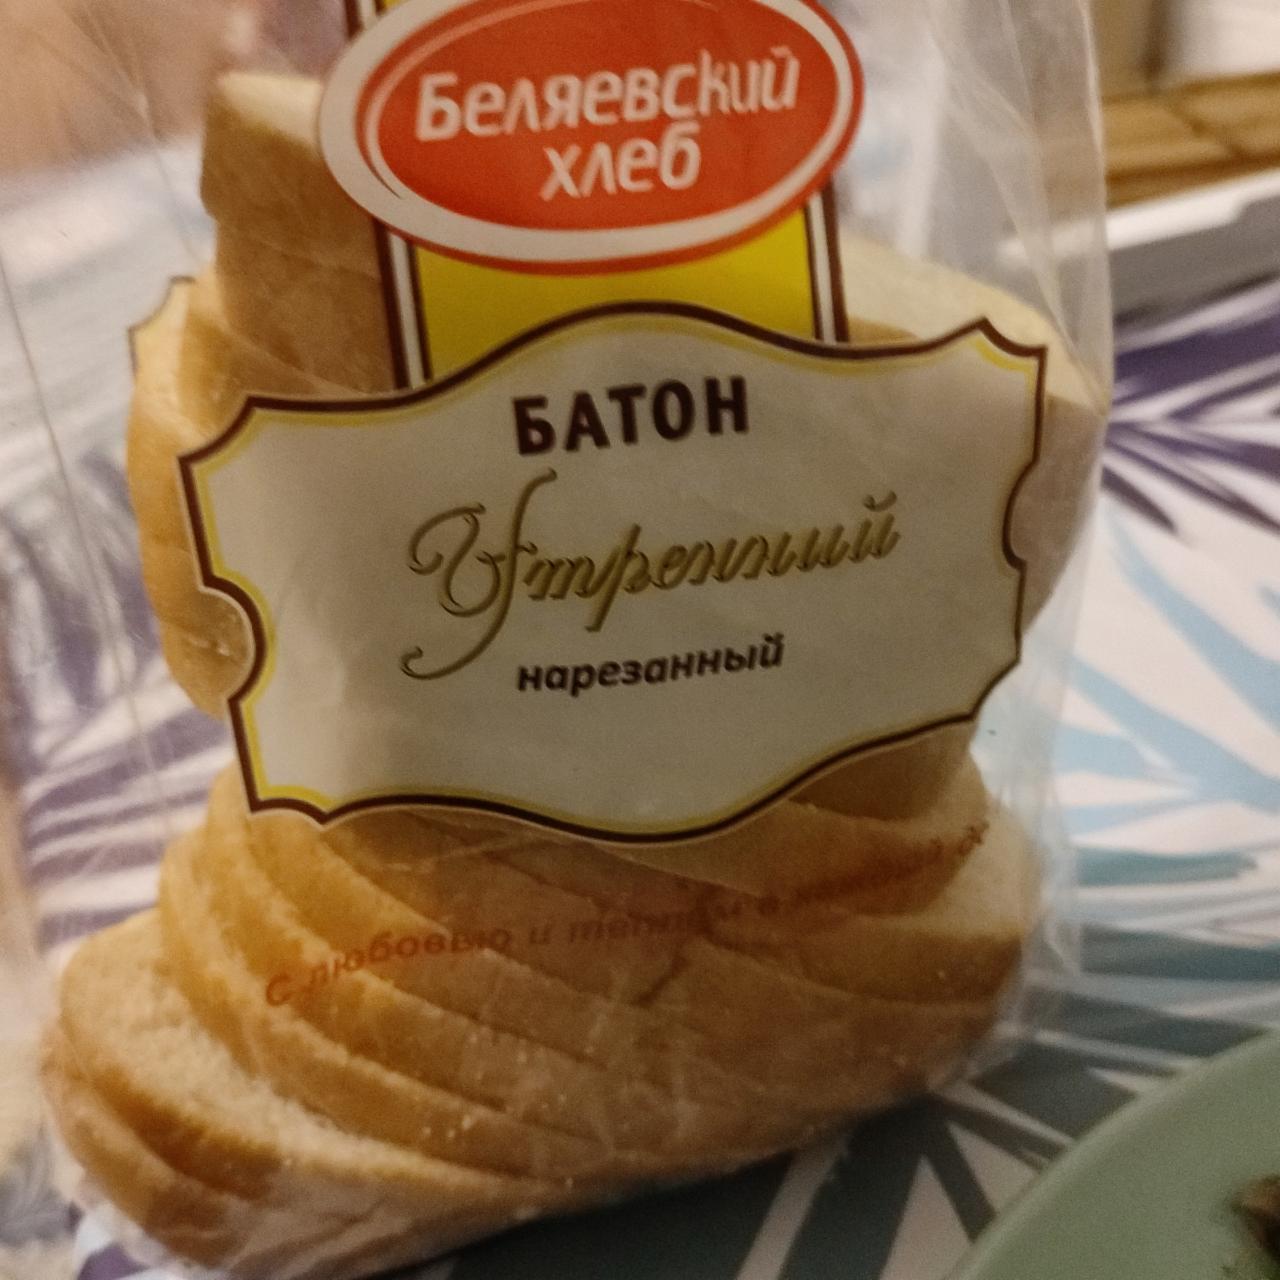 Фото - Батон утренний Беляевский хлеб